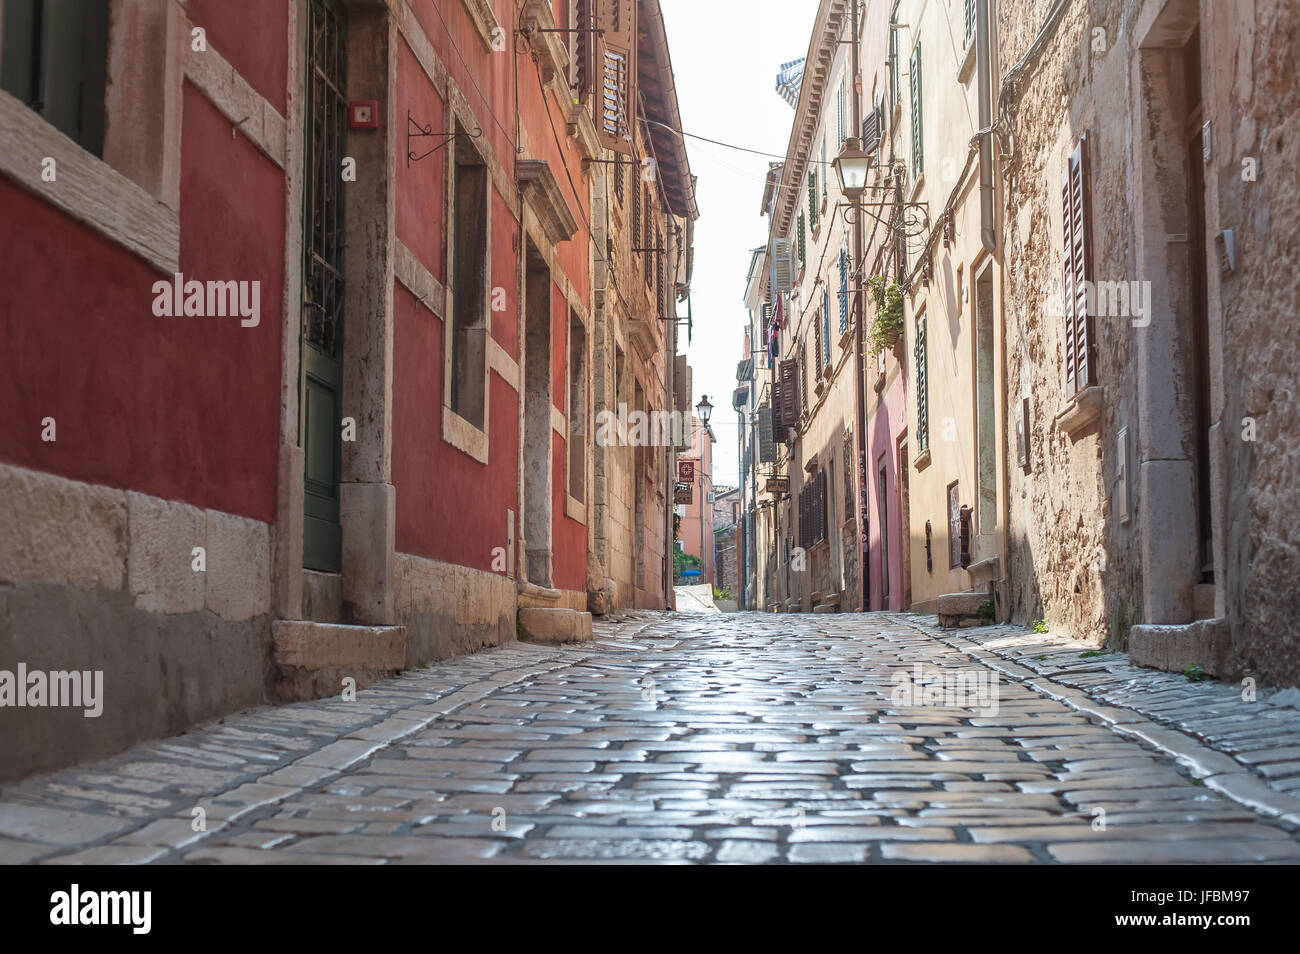 Coastal old town small narrow street. Rovinj, Istria, Croatia Stock Photo